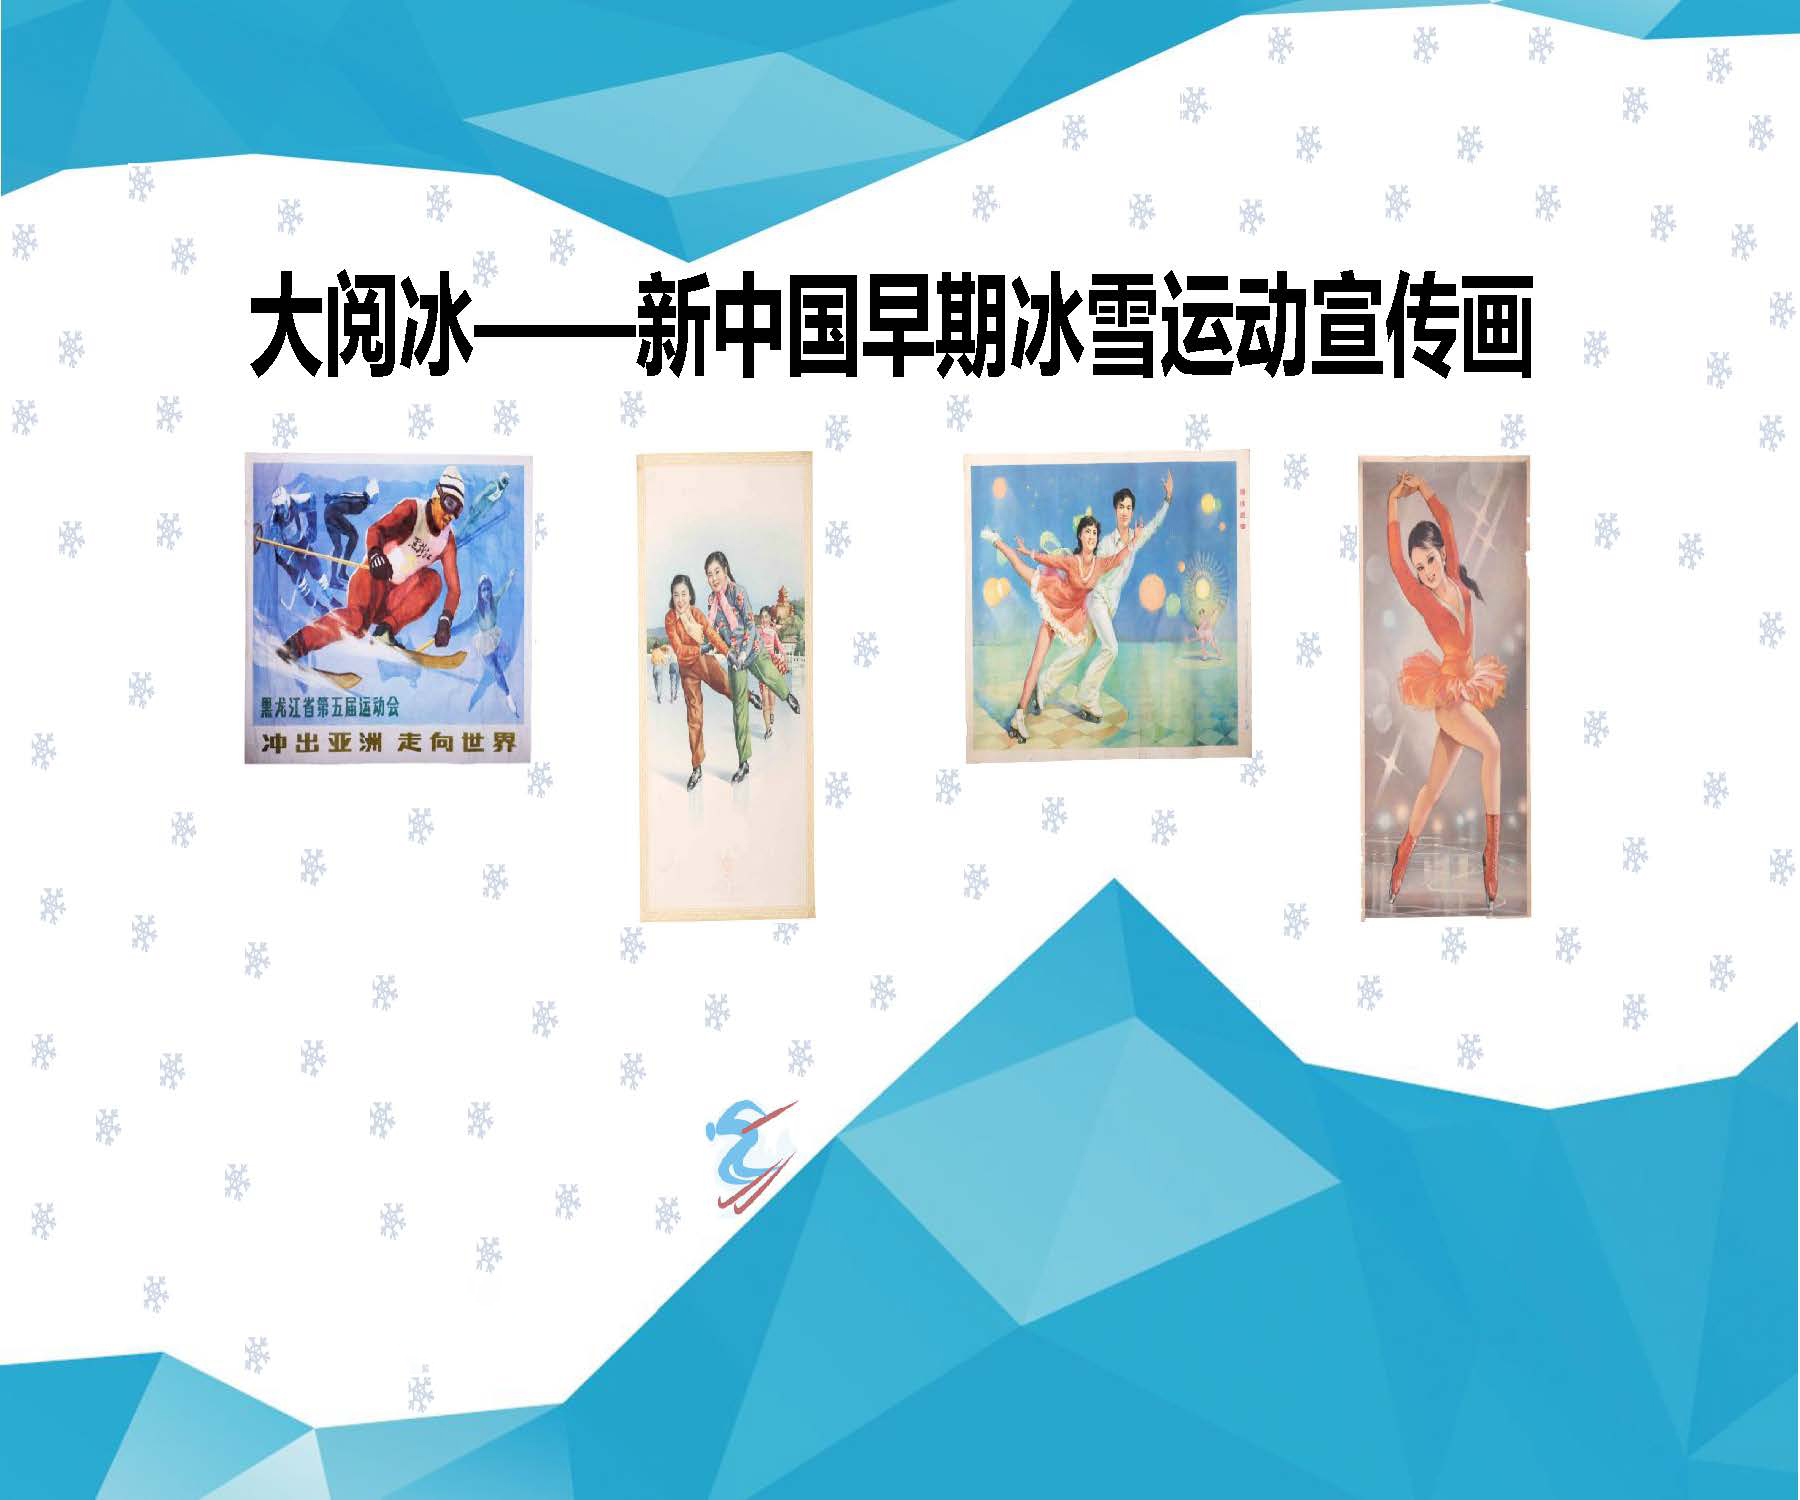 大阅冰——新中国早期冰雪运动宣传画